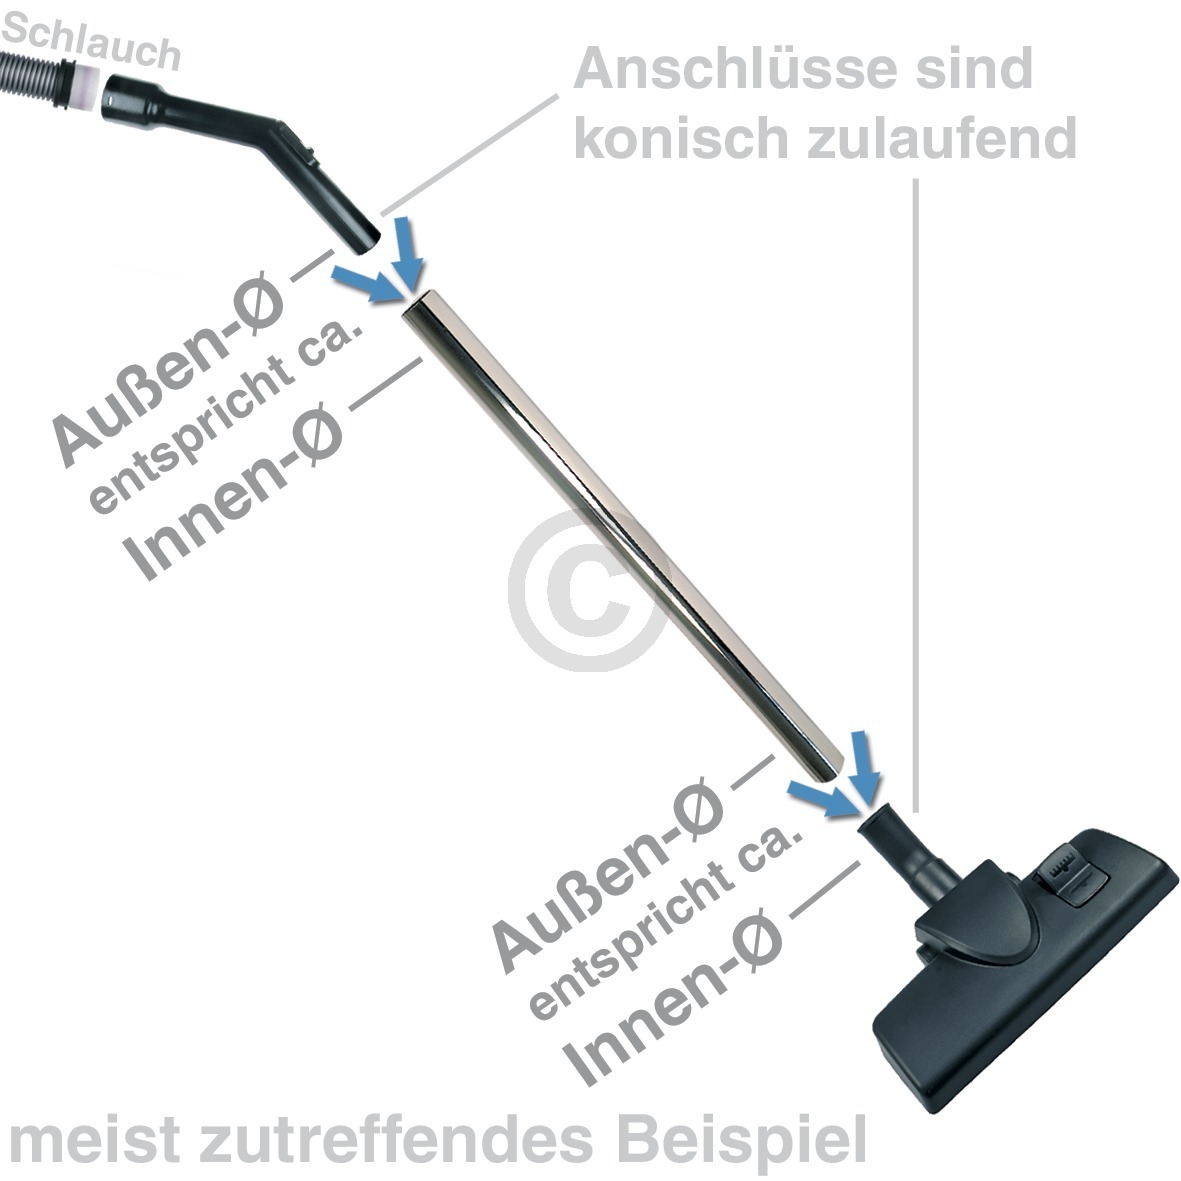 Bodendüse universal kompatibel mit mit Schraubadapter für 32mm - 38mm Rohr-Ø Staubsauger für Feuchträume Badezimmer